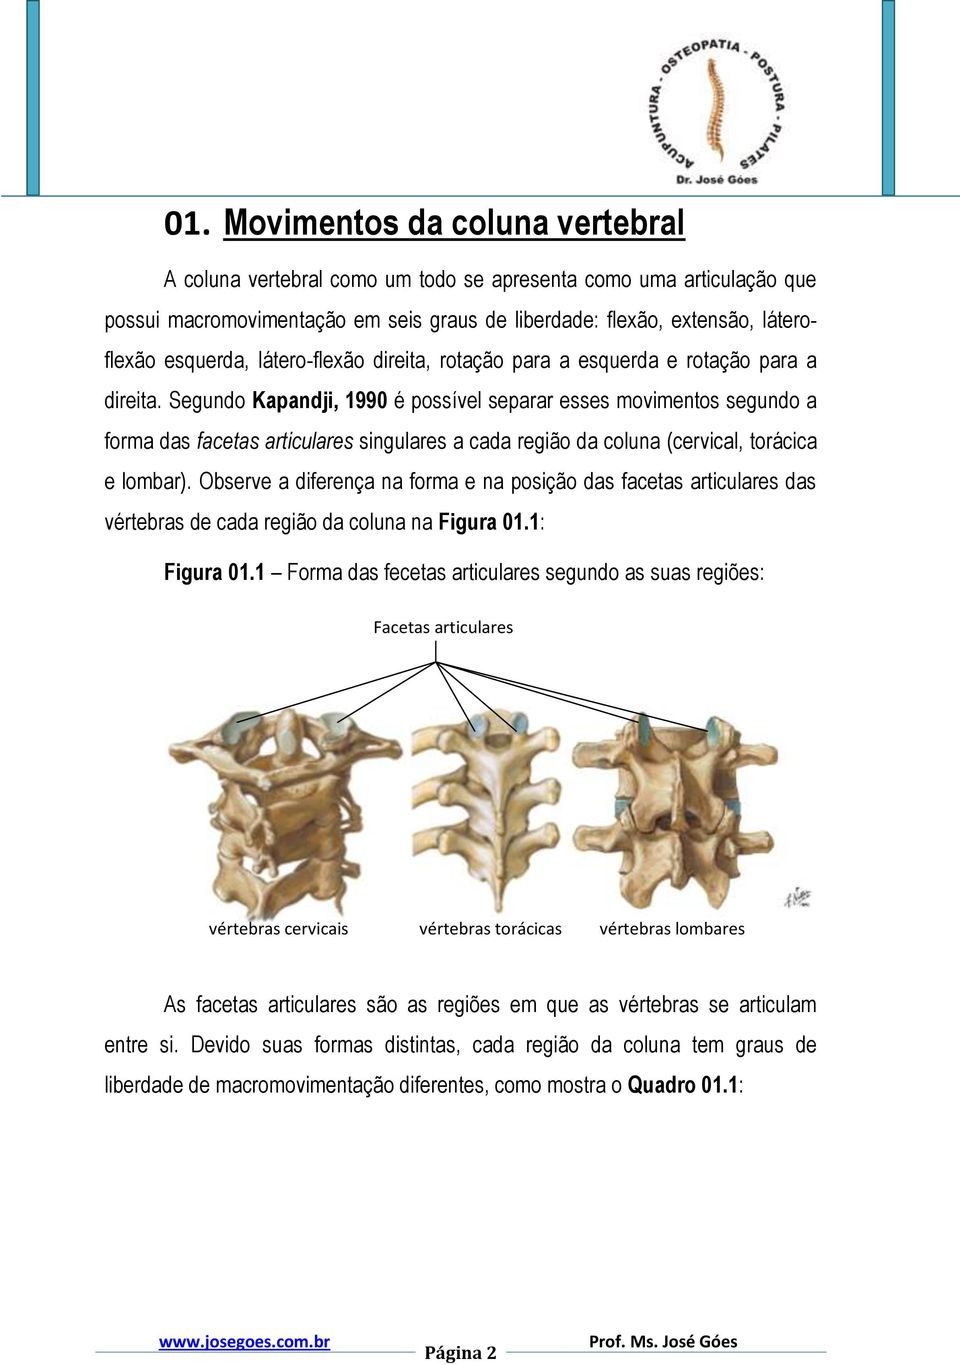 Segundo Kapandji, 1990 é possível separar esses movimentos segundo a forma das facetas articulares singulares a cada região da coluna (cervical, torácica e lombar).